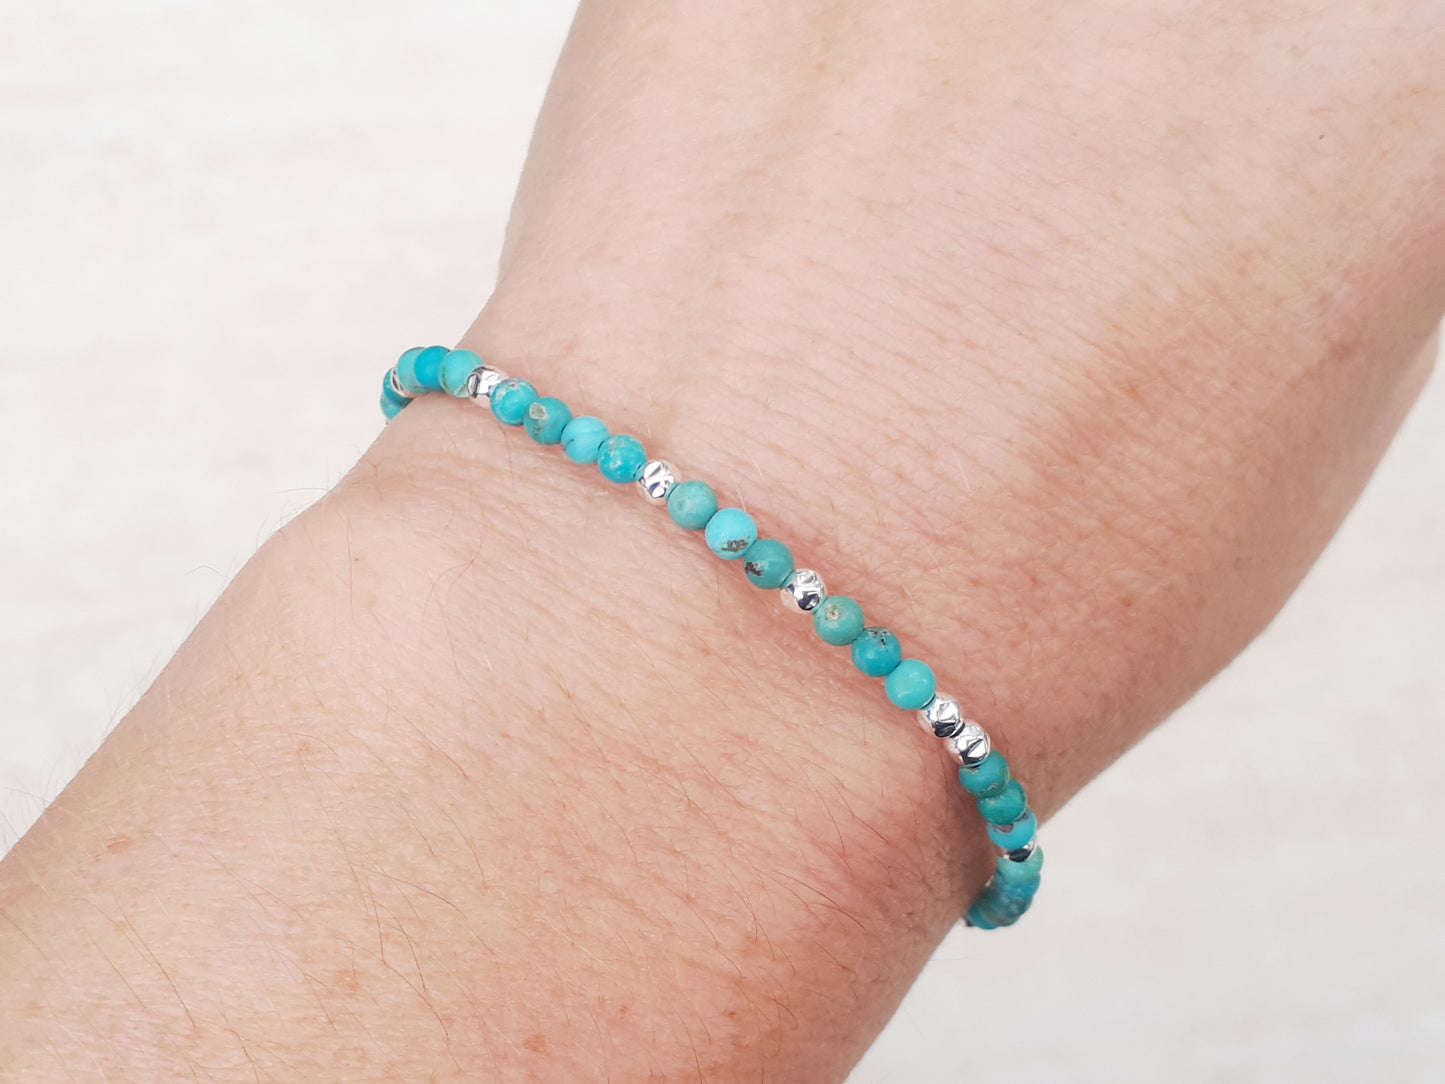 Turquoise gemstone bracelet.